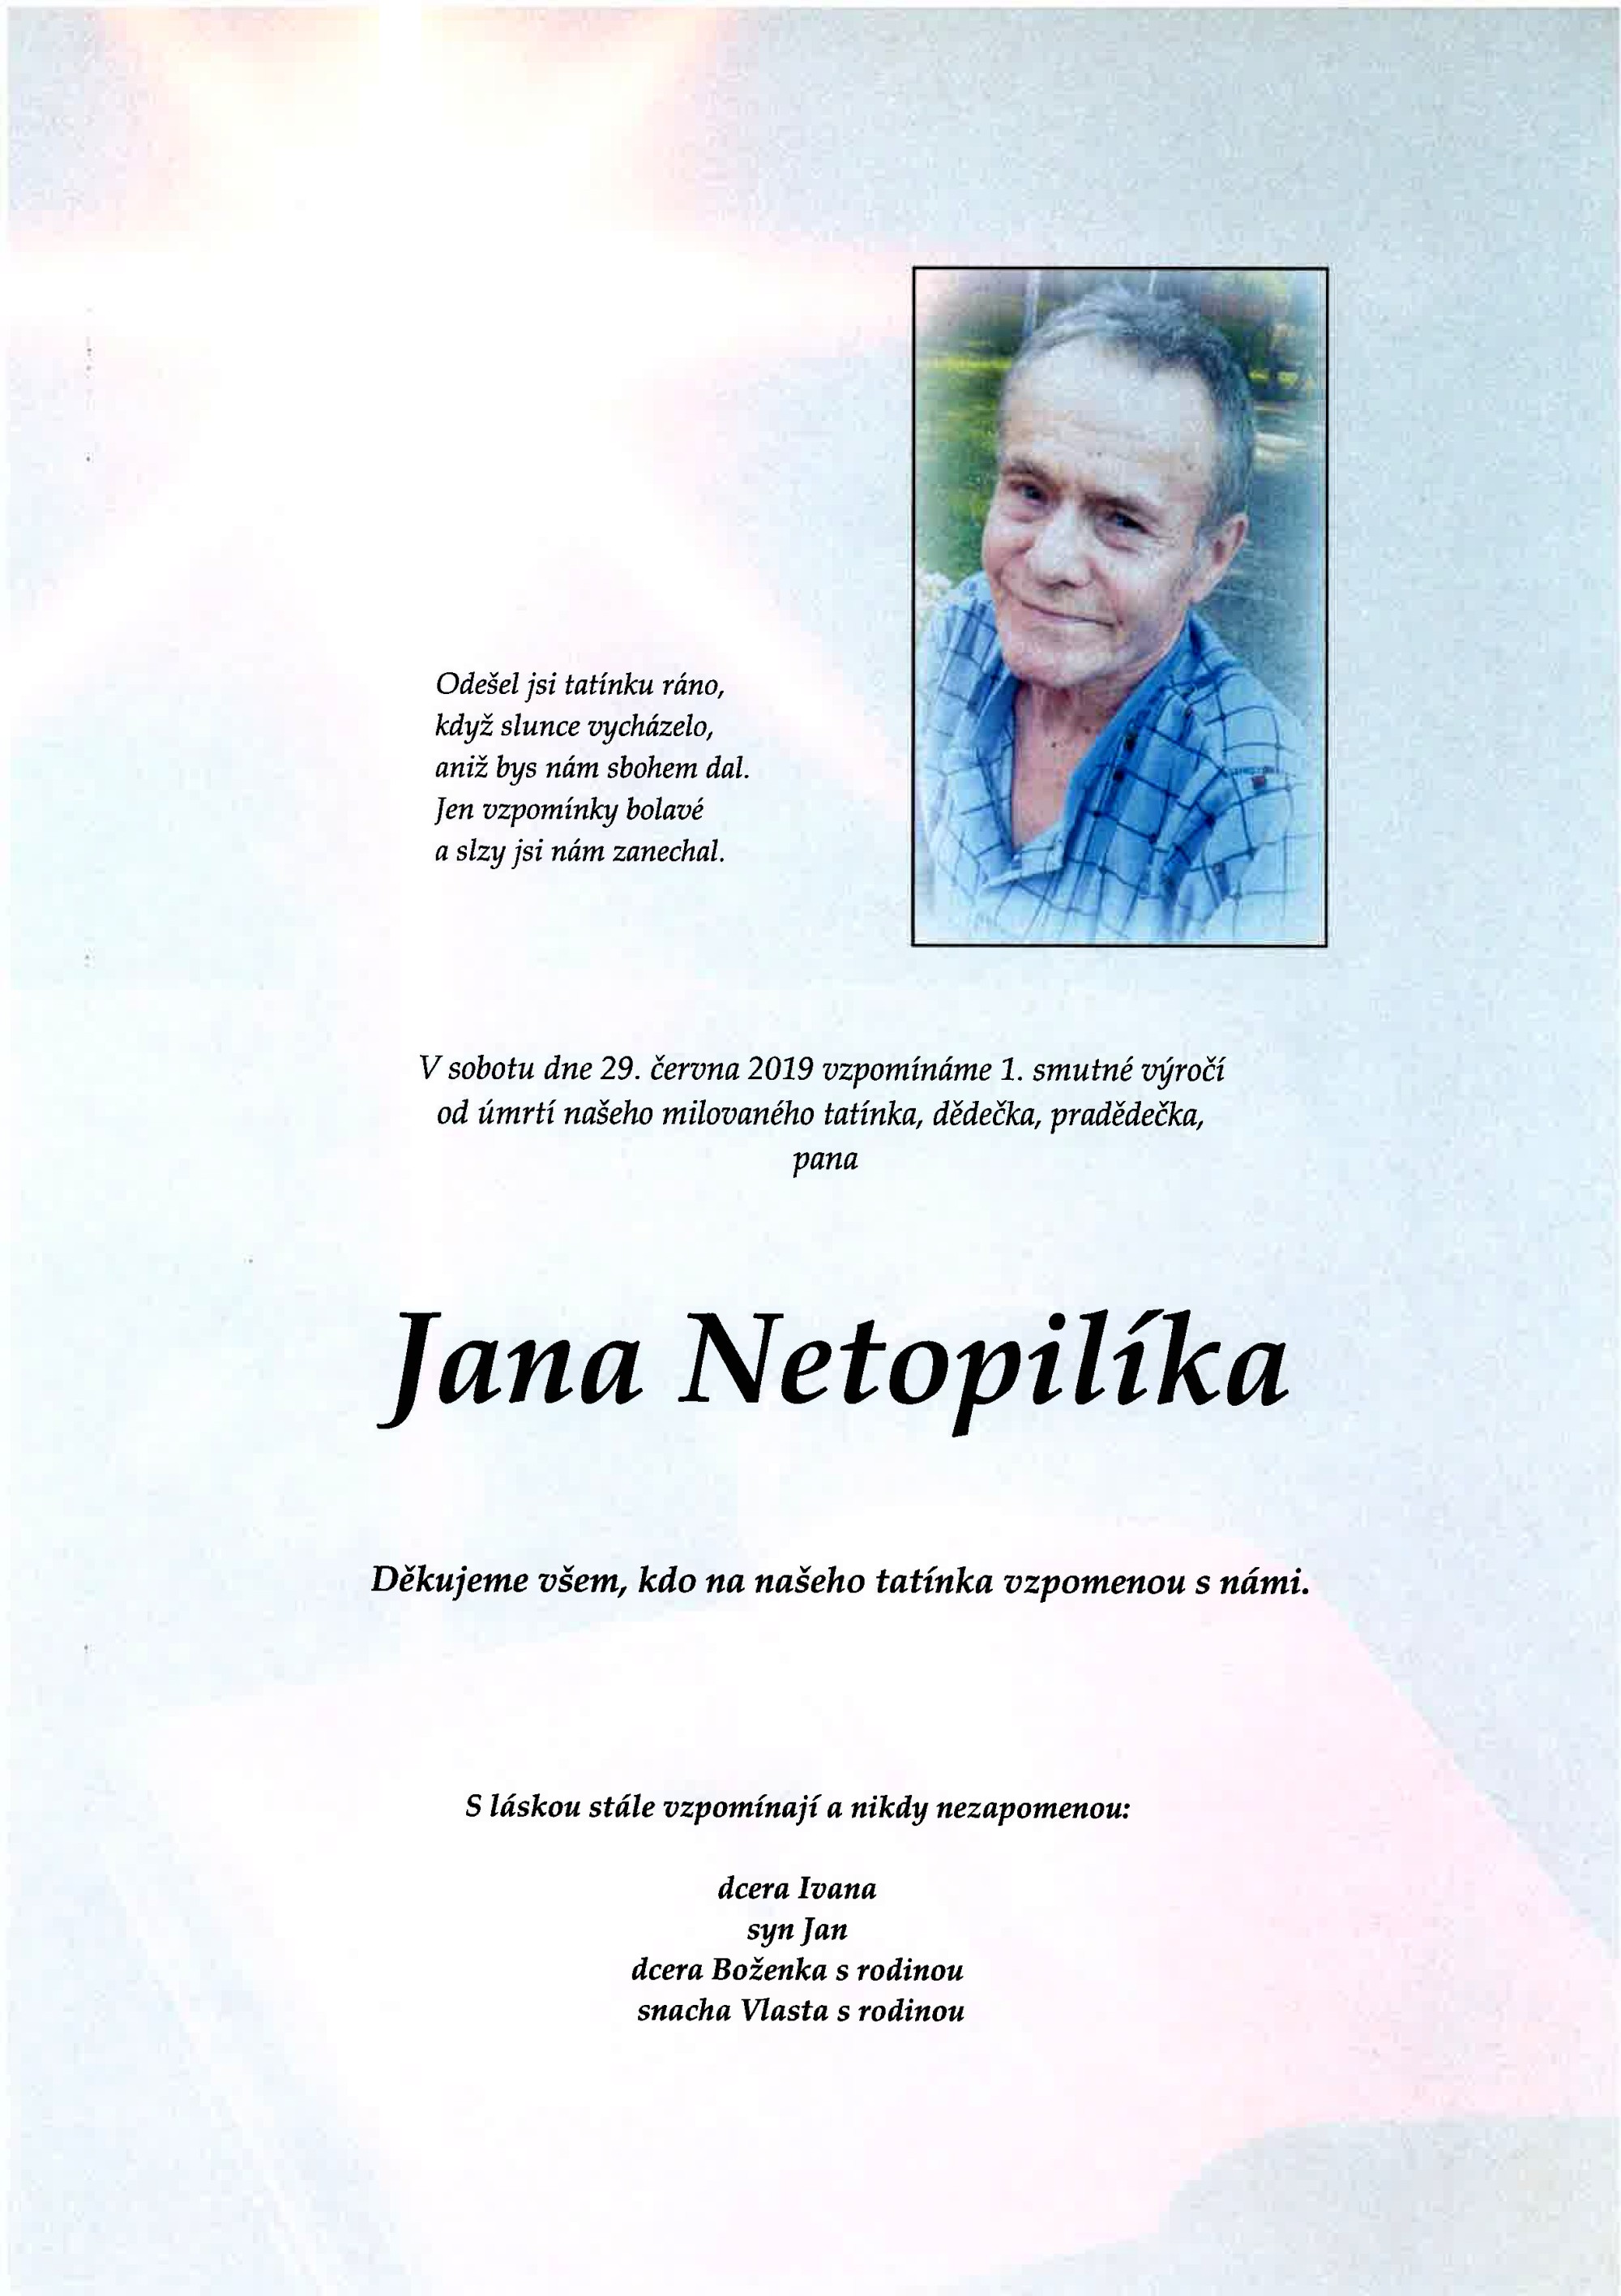 Jan Netopilík